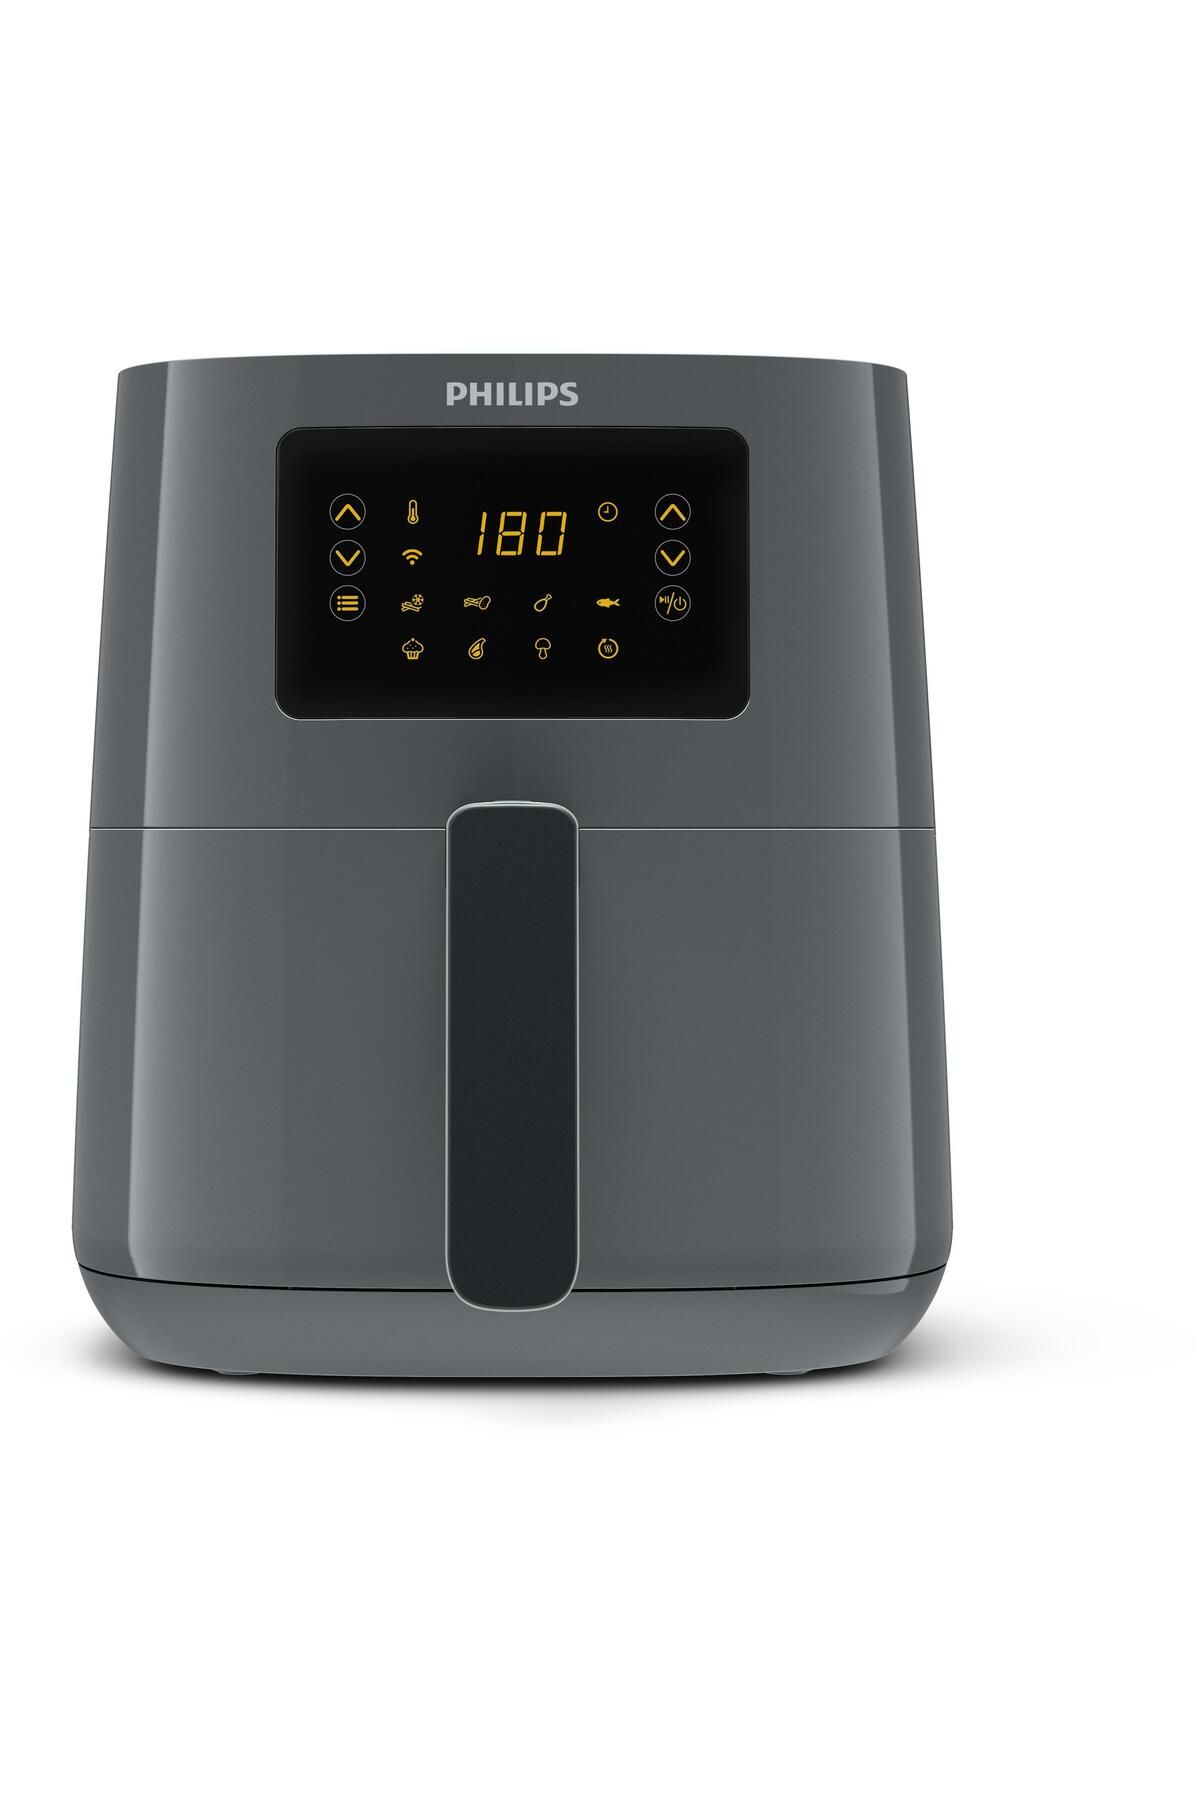 Philips 5000 Serisi Airfryer, Uzaktan Bağlantı, 0.8kg, 4.1L Kapasite, Gri, HD9255/60